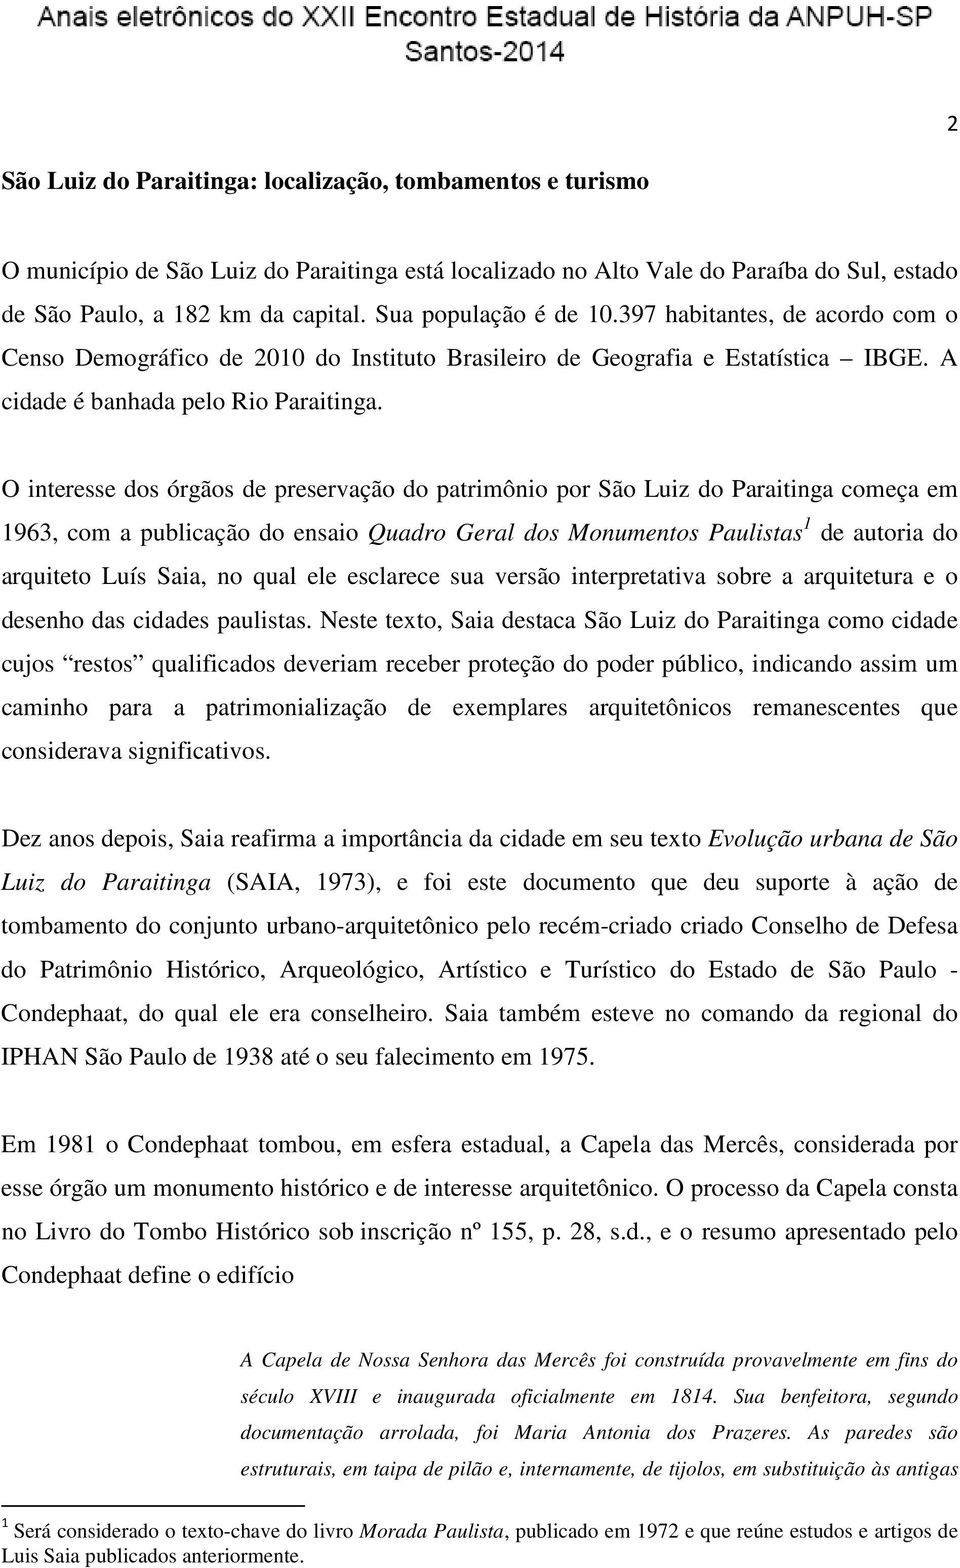 O interesse dos órgãos de preservação do patrimônio por São Luiz do Paraitinga começa em 1963, com a publicação do ensaio Quadro Geral dos Monumentos Paulistas 1 de autoria do arquiteto Luís Saia, no